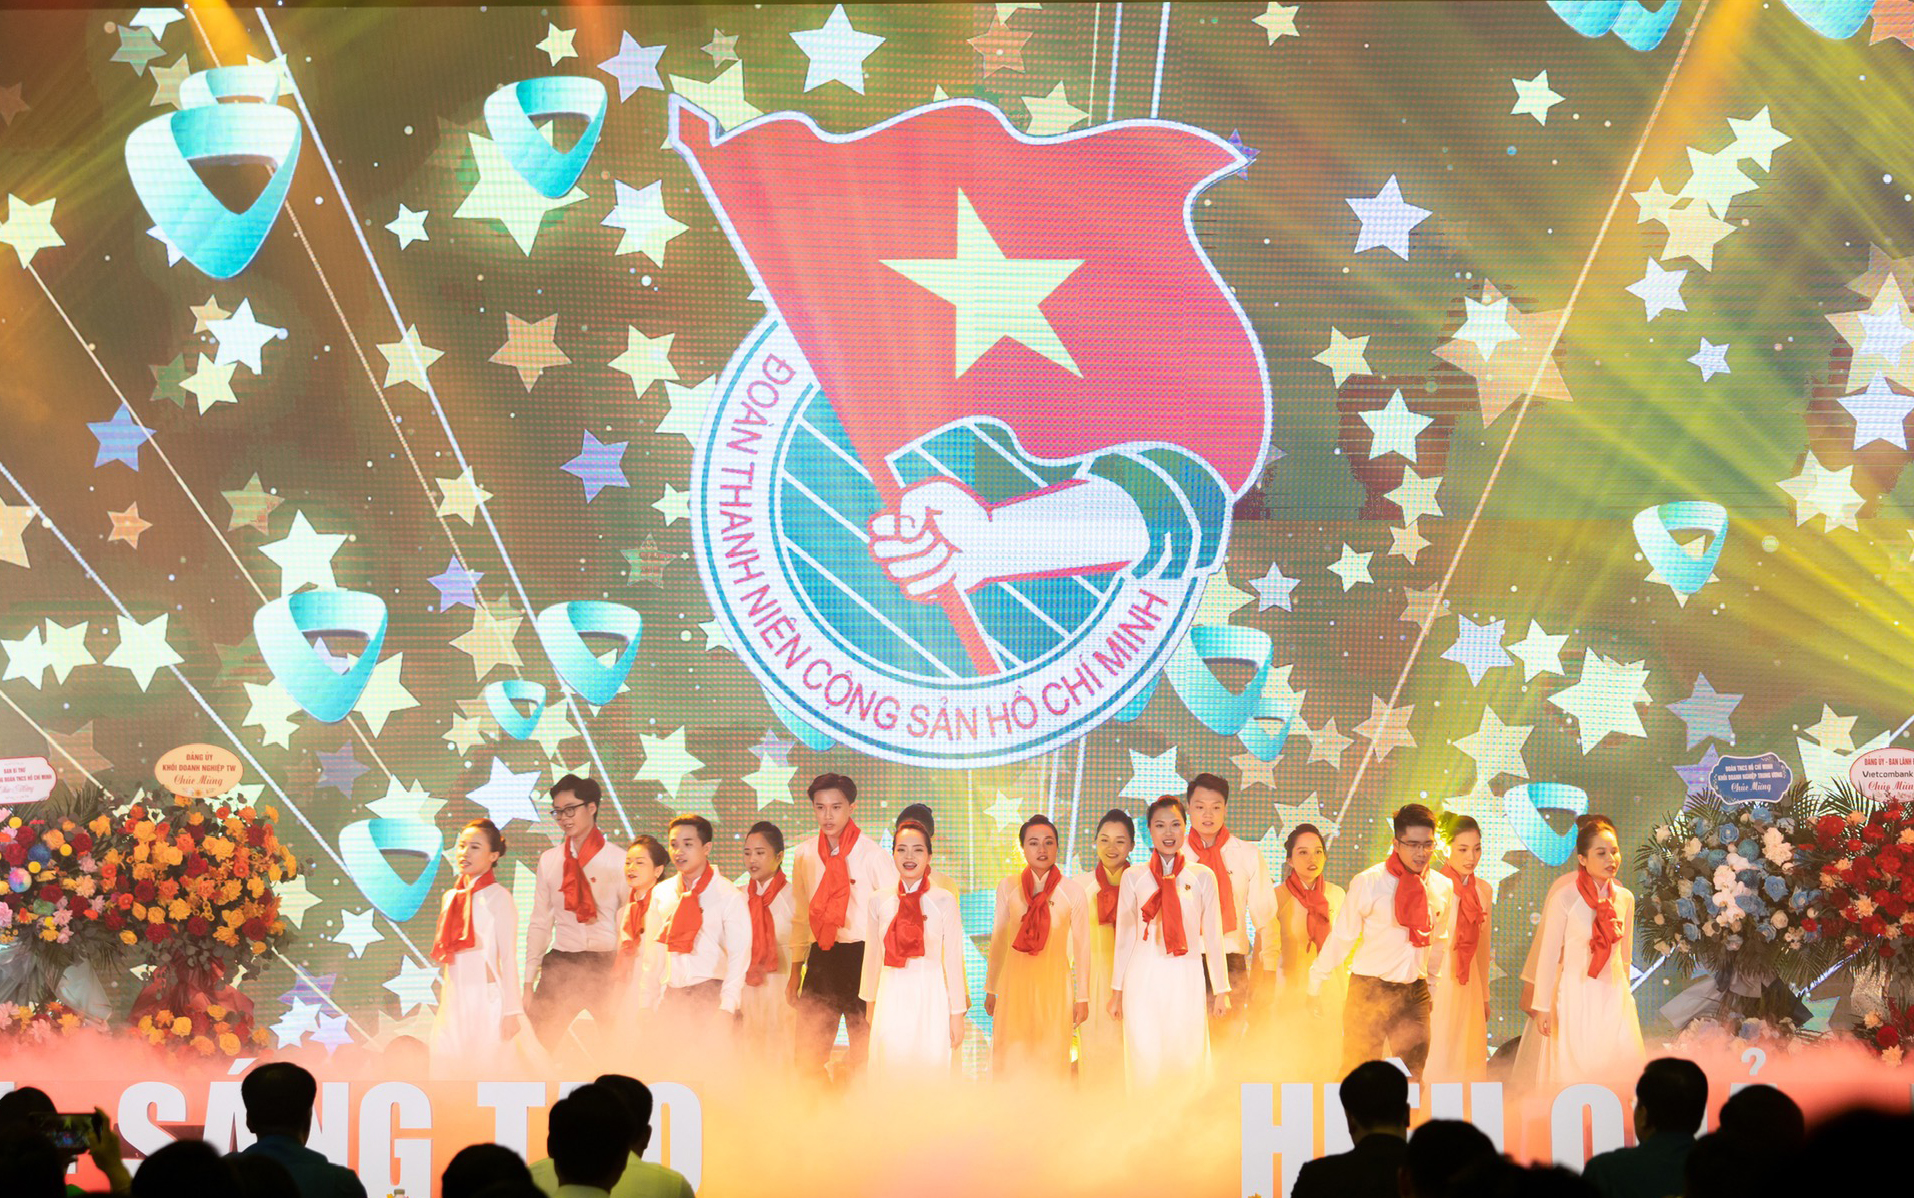 Chương trình văn nghệ chào mừng Đại hội Đại biểu Đoàn thanh niên Cộng sản Hồ chí Minh Vietcombank lần thứ IV nhiệm kỳ 2022 - 2027.